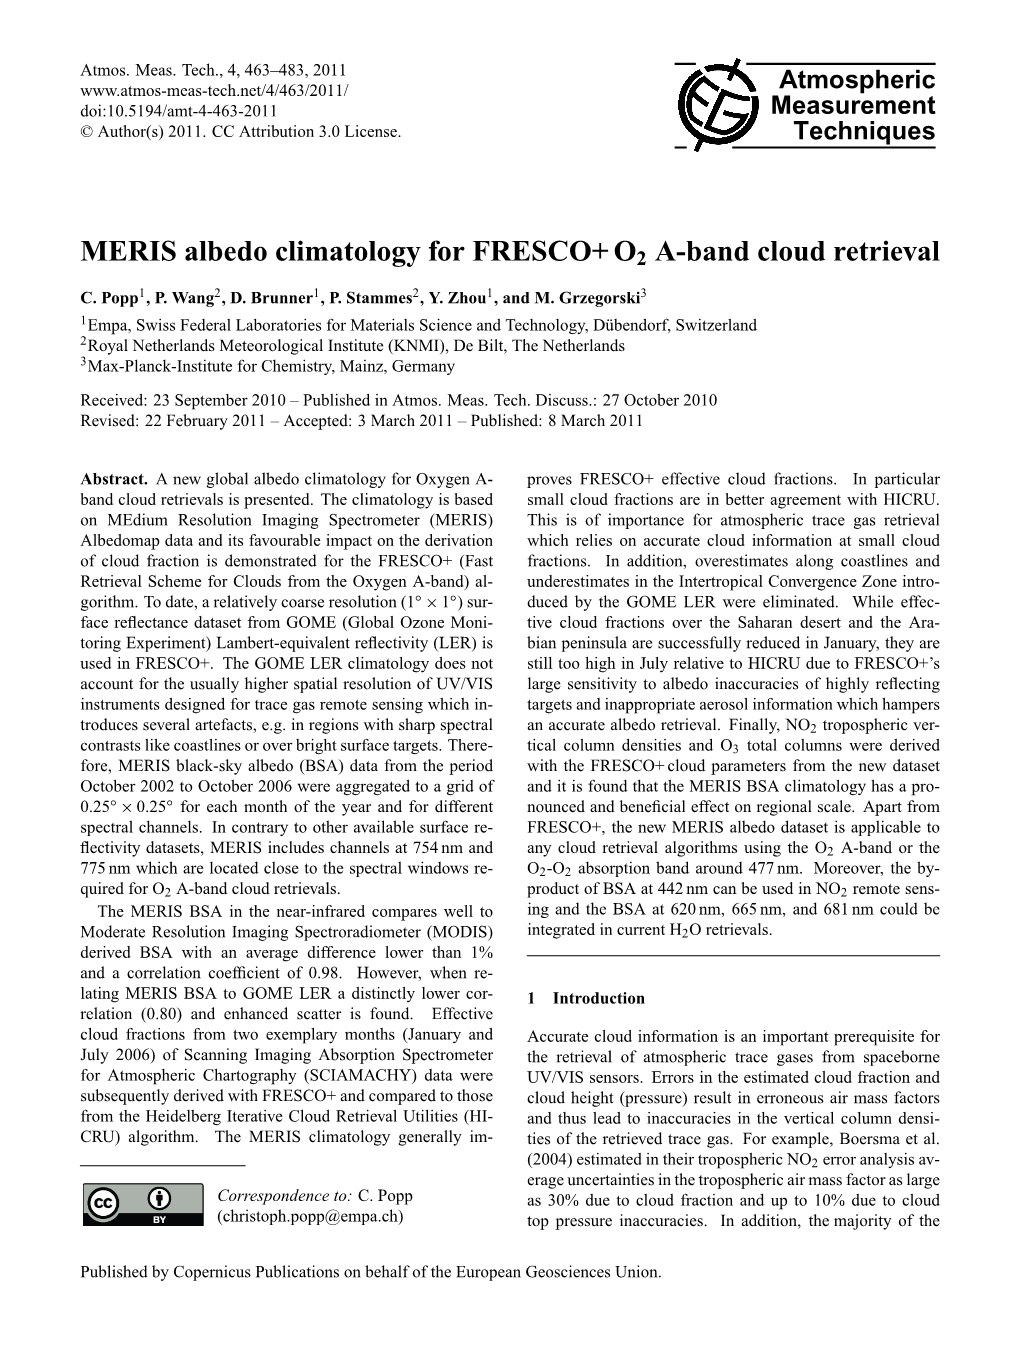 MERIS Albedo Climatology for FRESCO+ O2 A-Band Cloud Retrieval